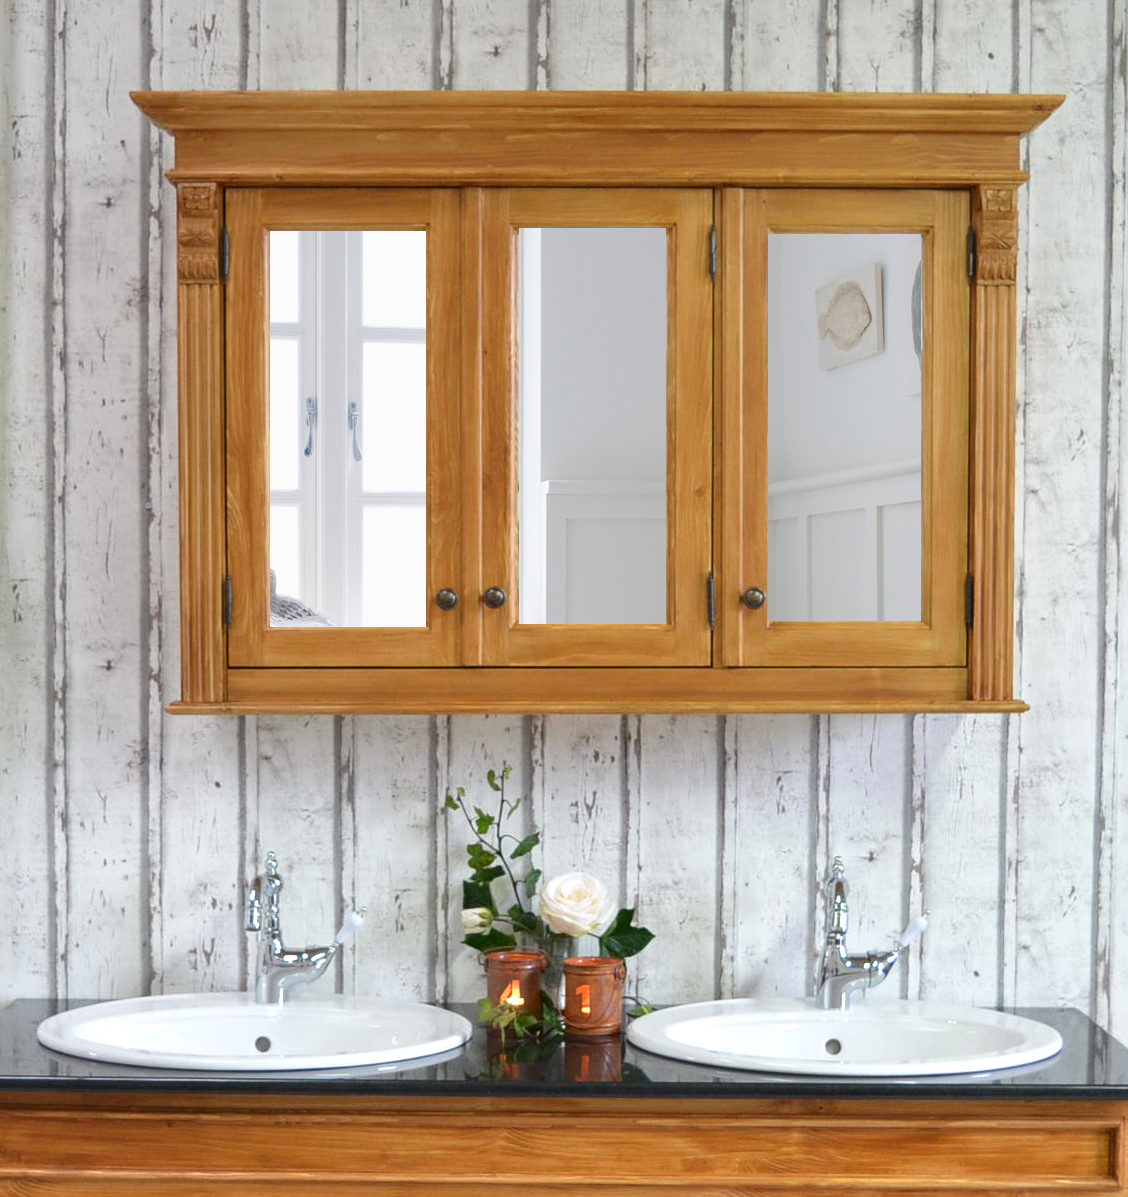 spiegelschrank im landhausstil - land & liebe badmöbel landhaus